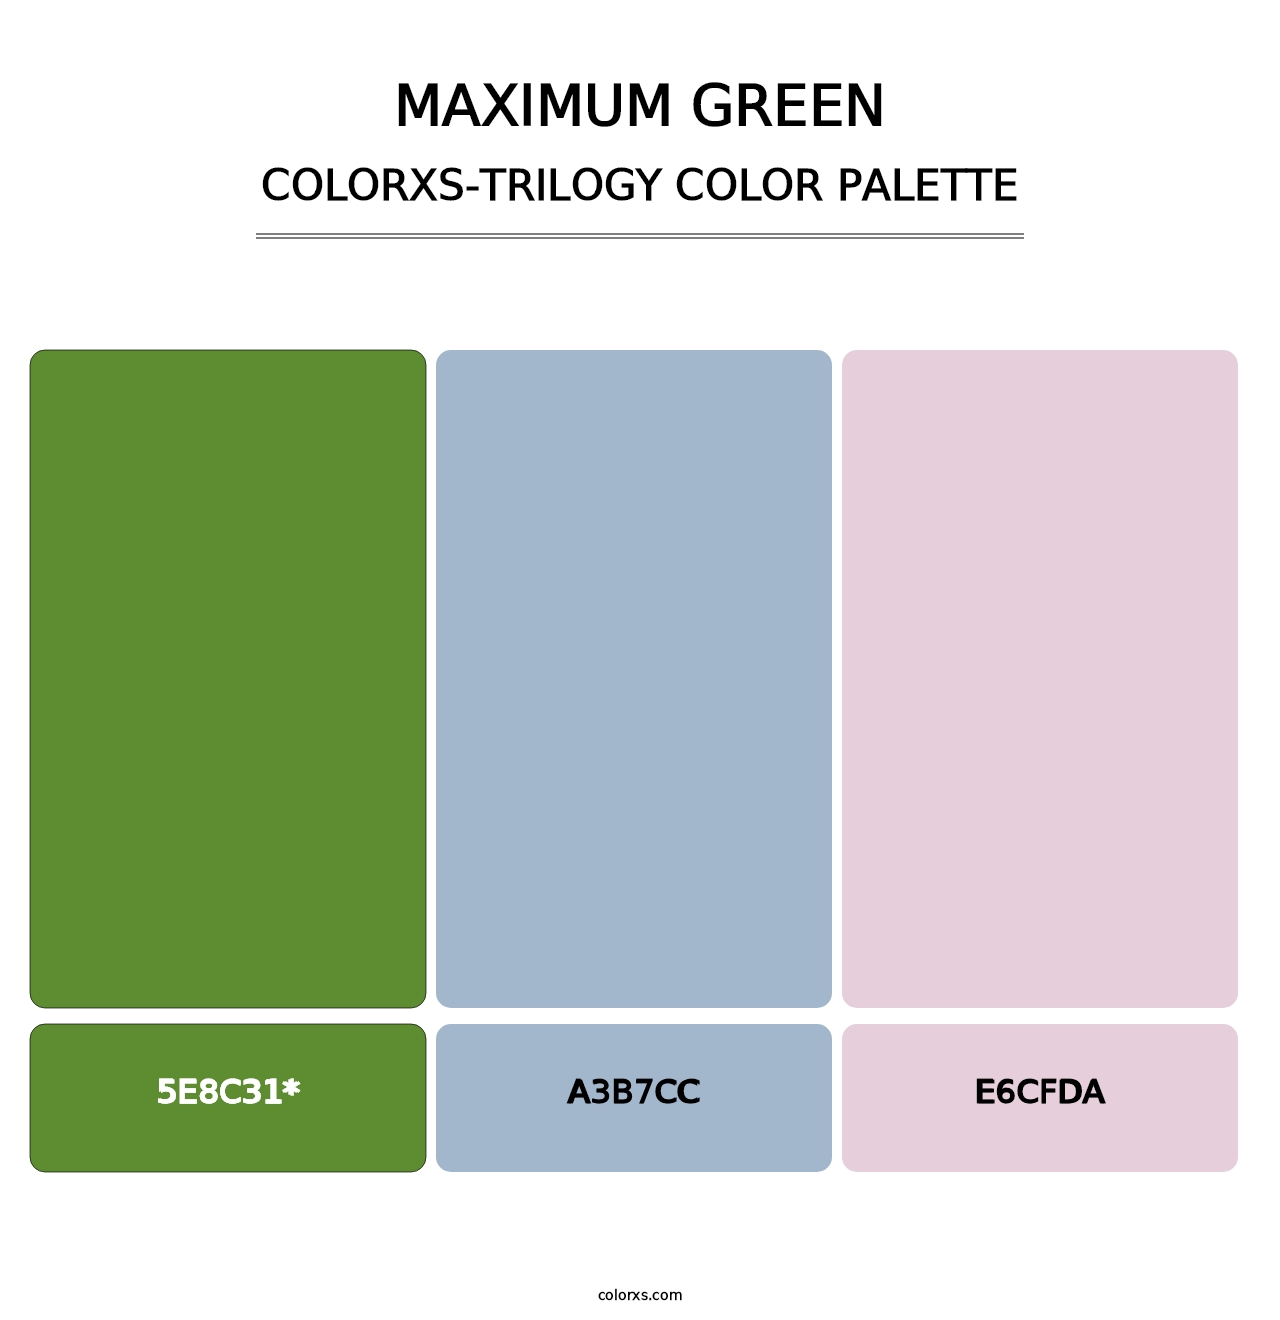 Maximum Green - Colorxs Trilogy Palette